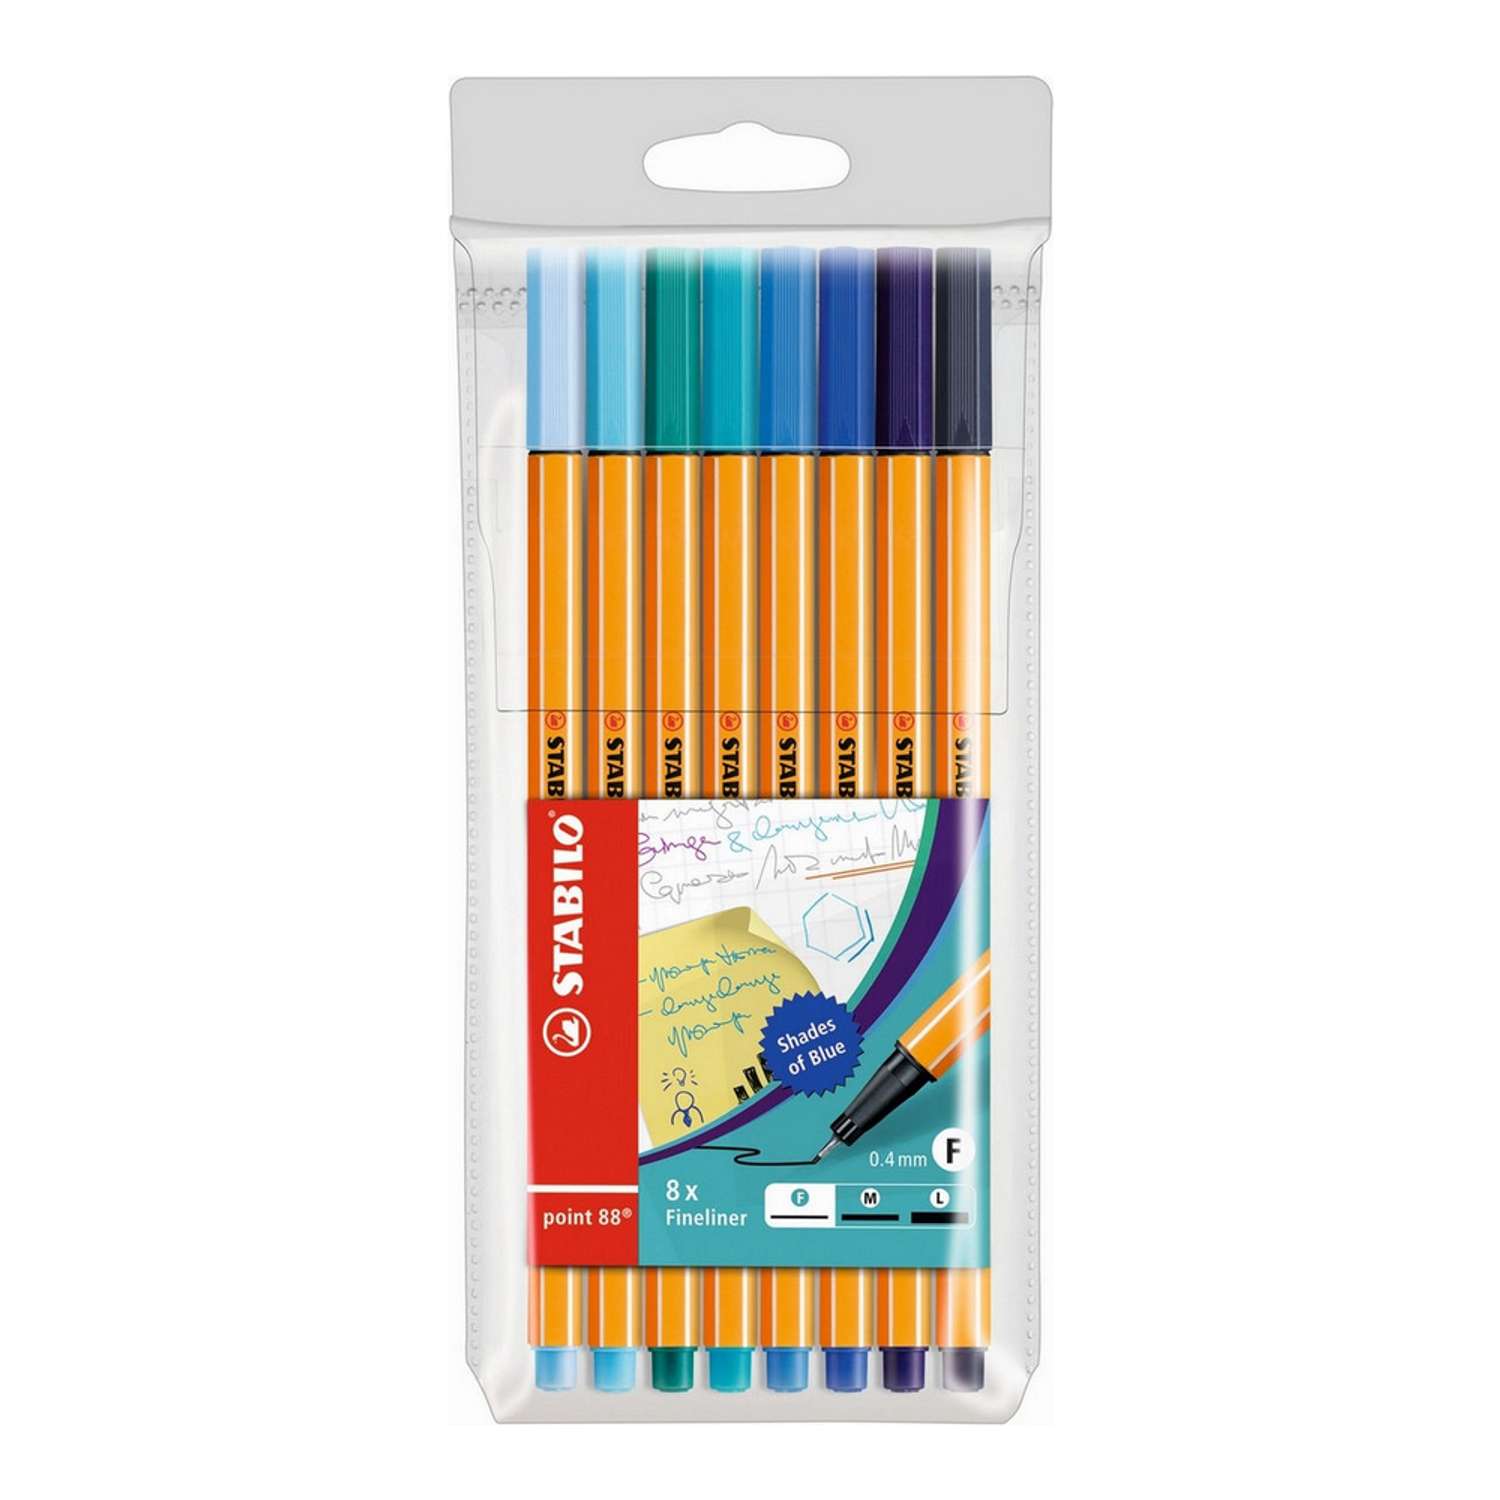 Ручка капиллярная STABILO point 88 Оттенки синего 8 цветов 88/8-03 - фото 1